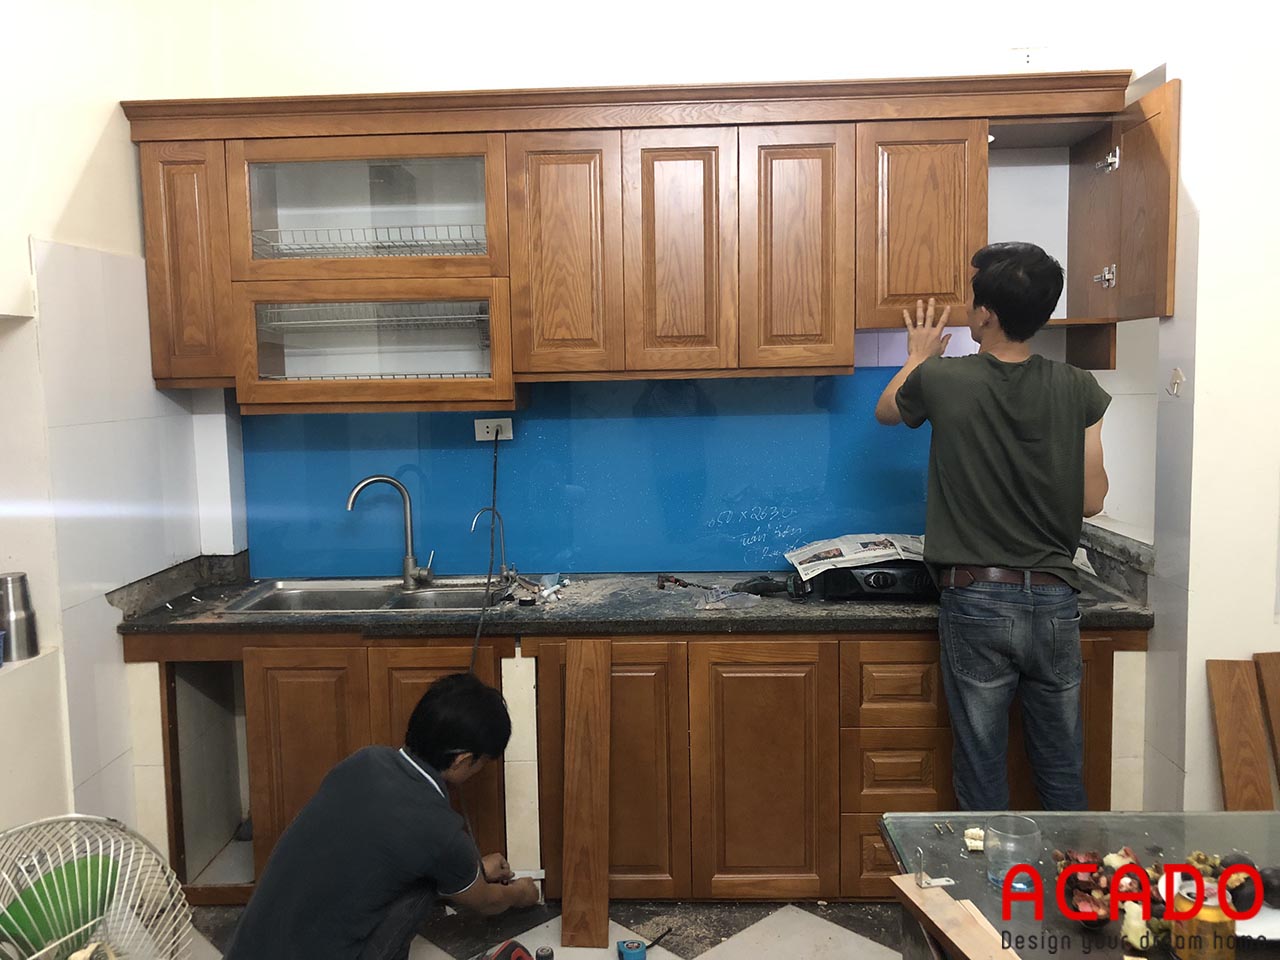 ACADO là đơn vị thiết kế và thi công tủ bếp uy tín- chất lượng hàng đầu tại Hà Nội